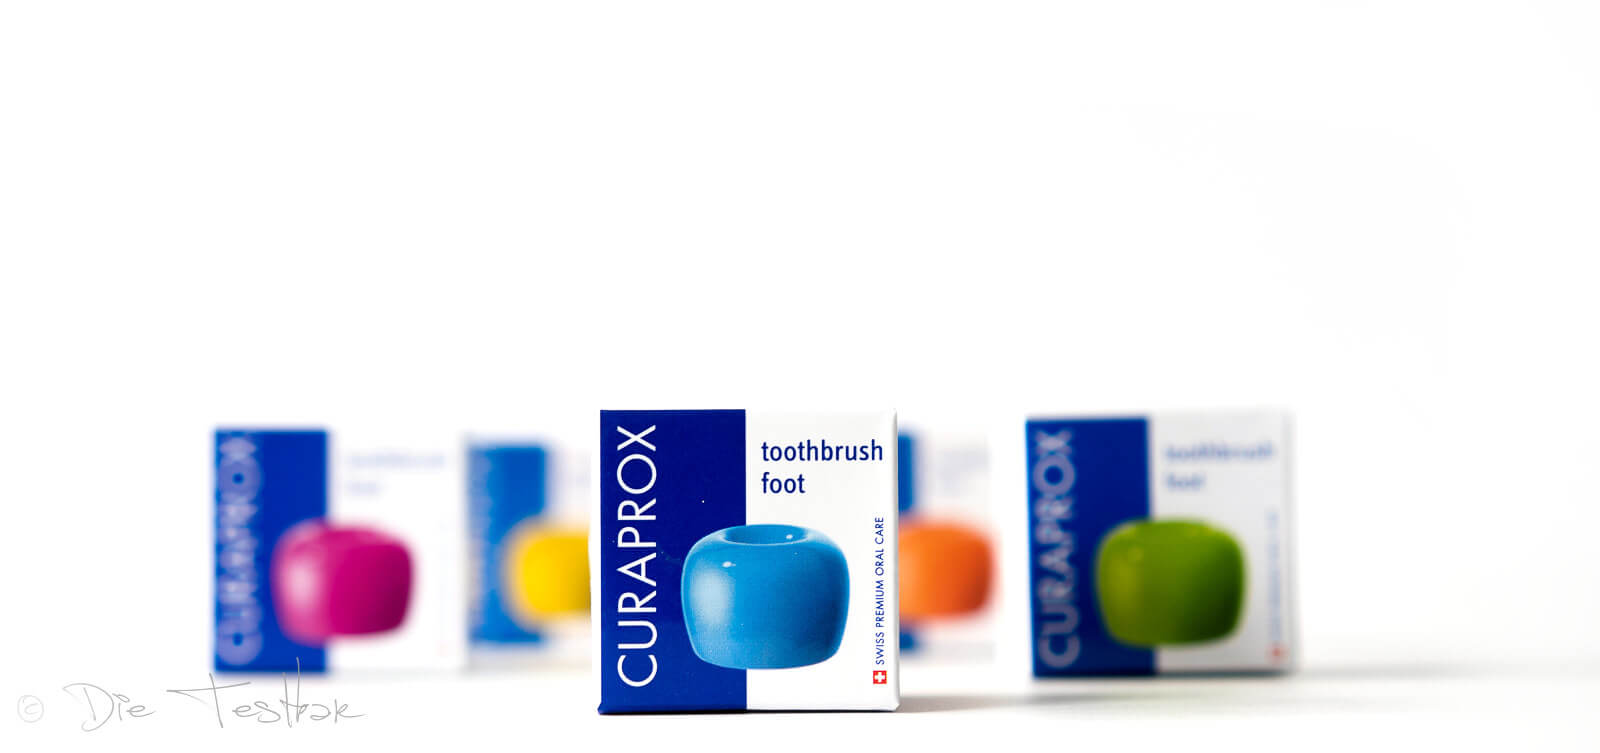 Curaprox - Stylisch bunte und innovative Zahnpflege - Alles für die perfekte Mundpflege 37